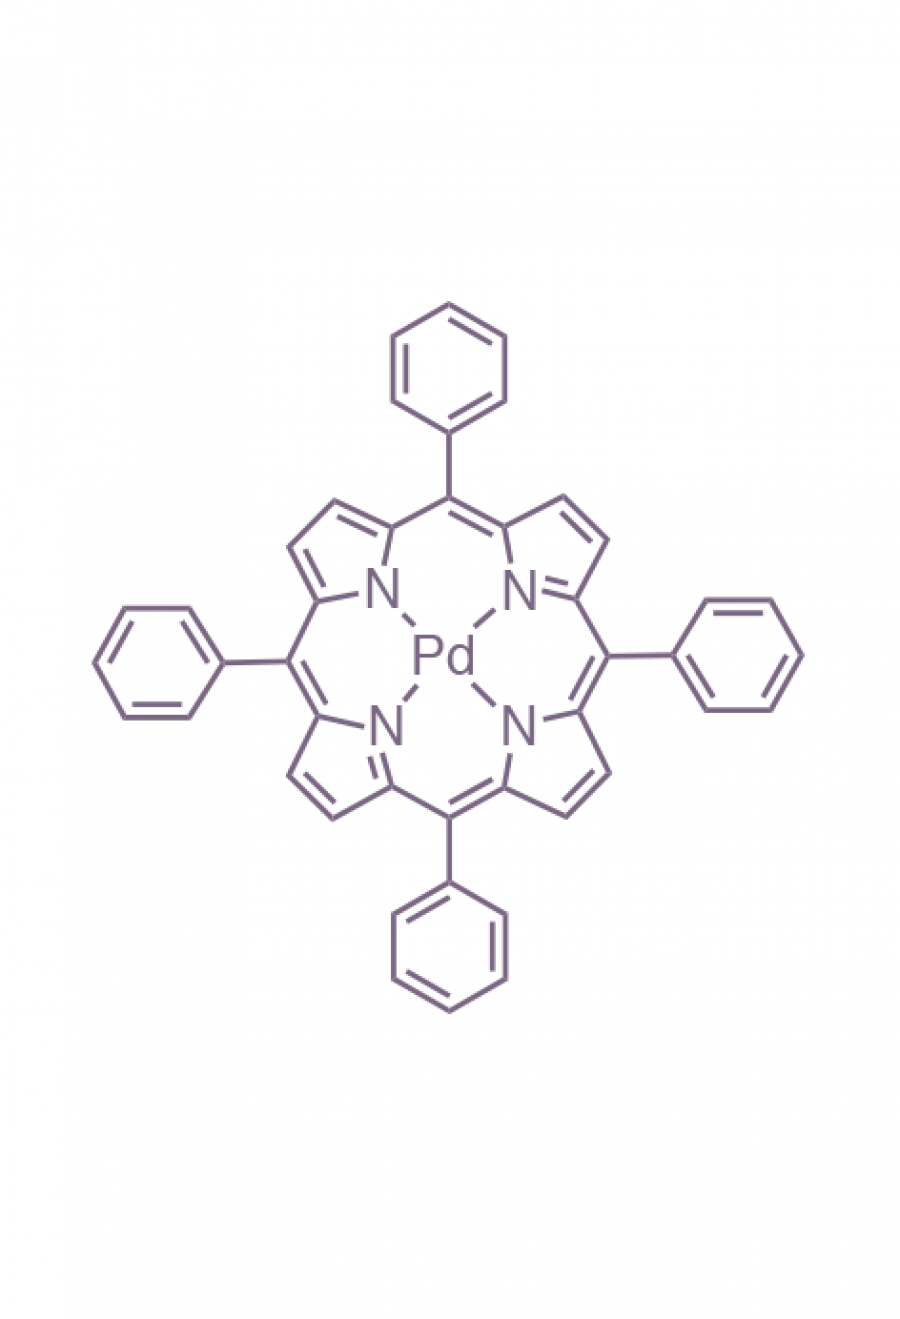 palladium(II) 5,10,15,20-(tetraphenyl)porphyrin